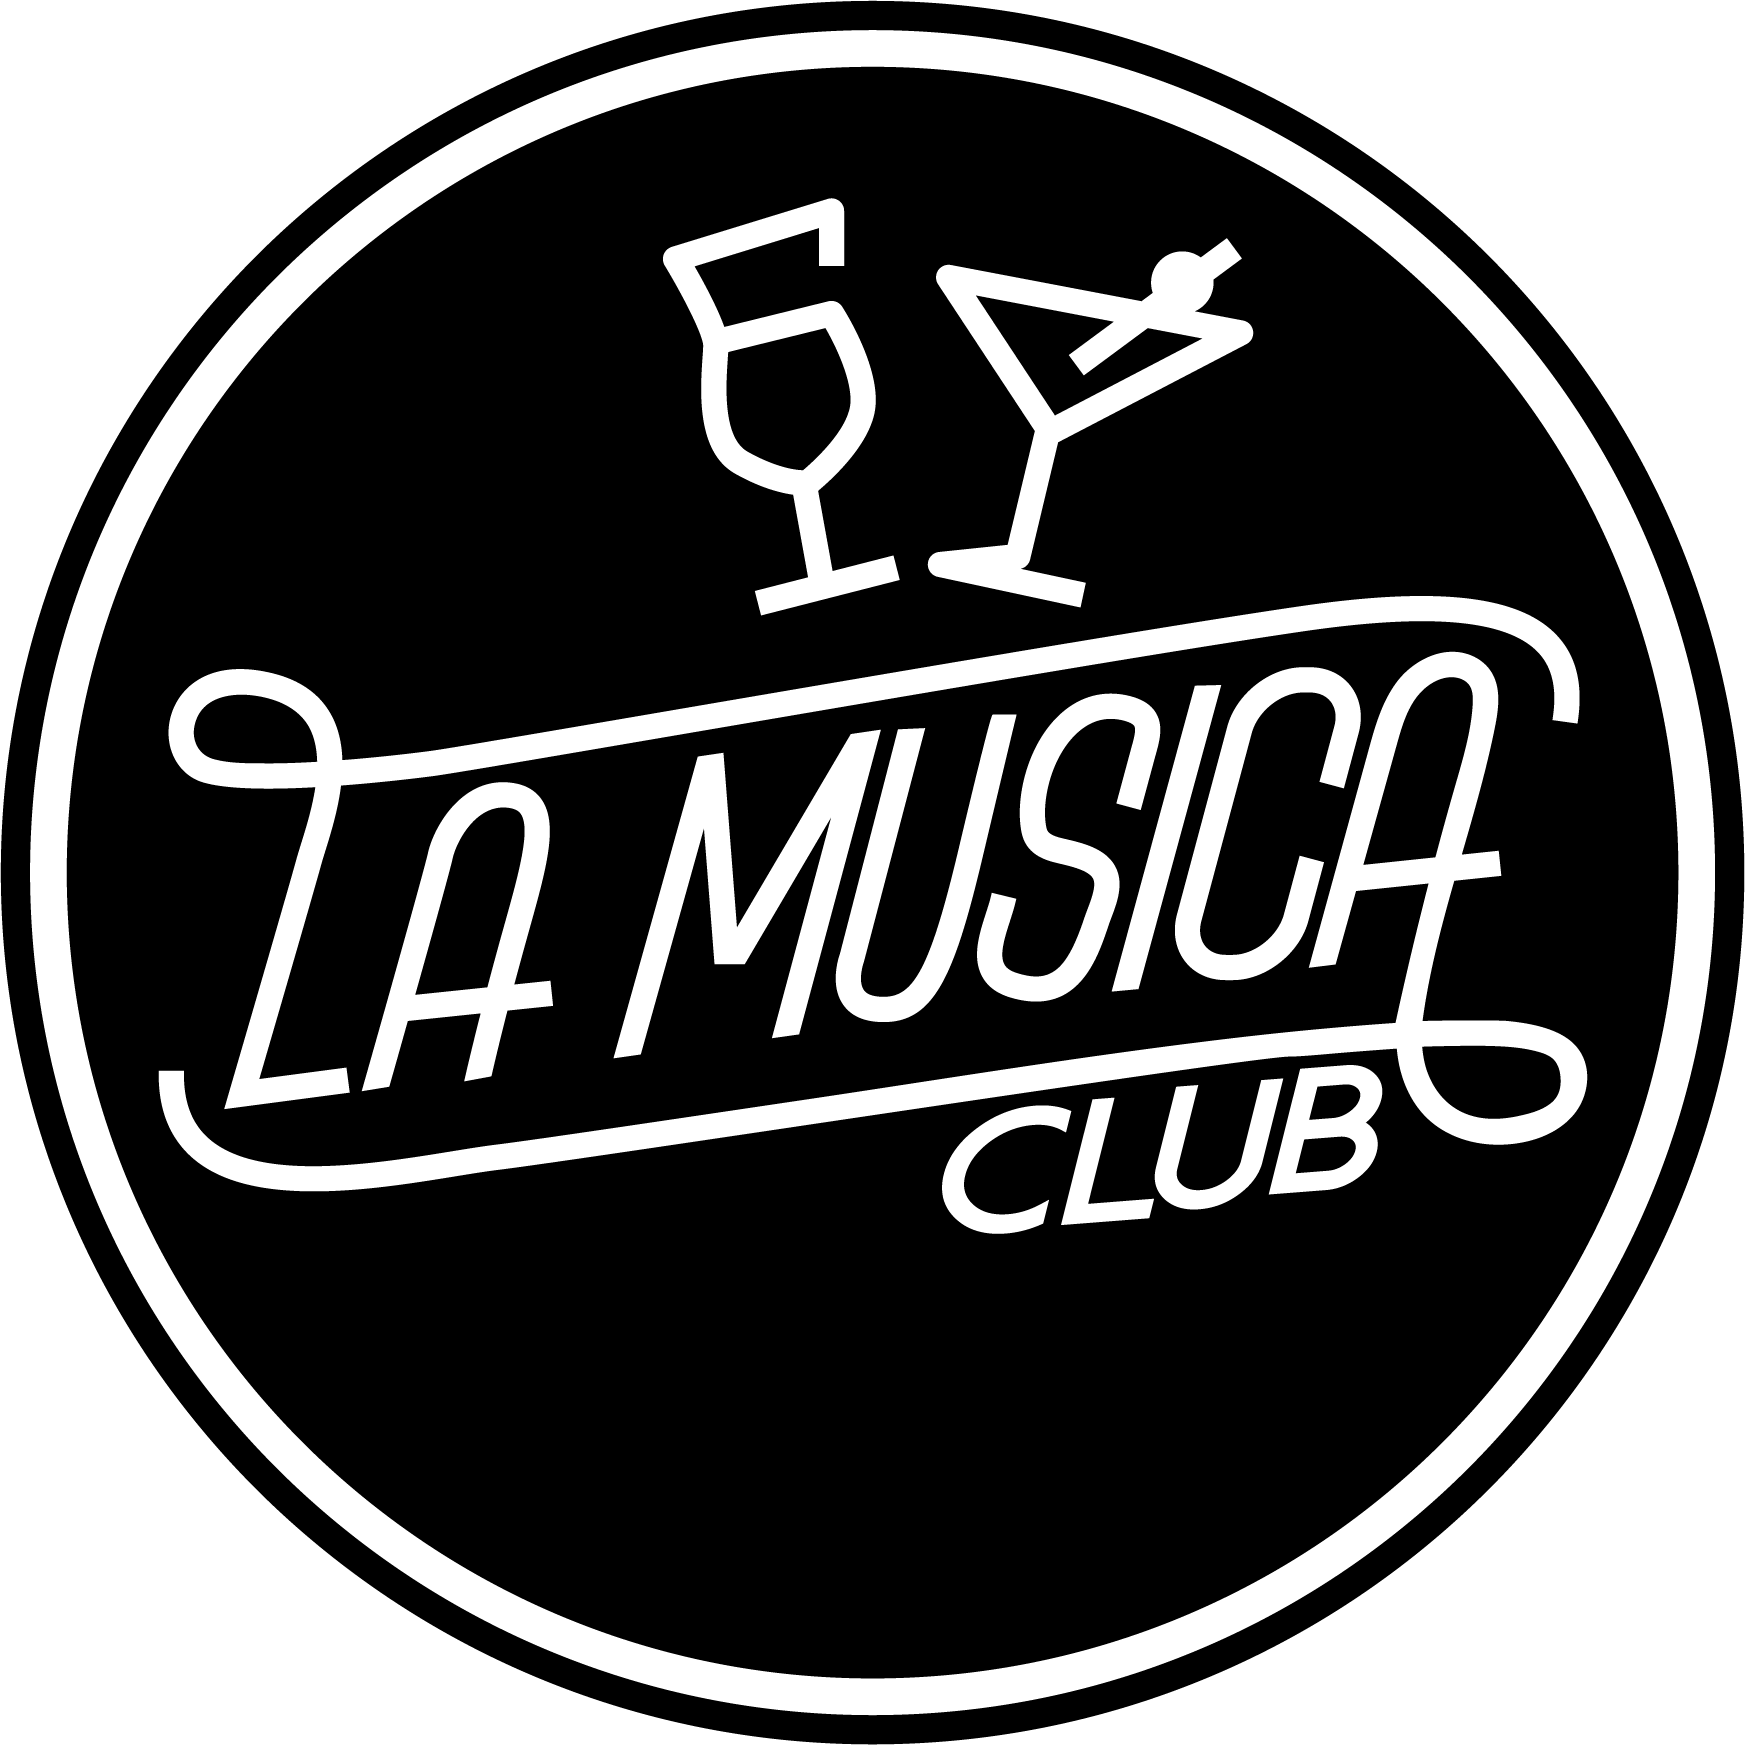 La Musica Club